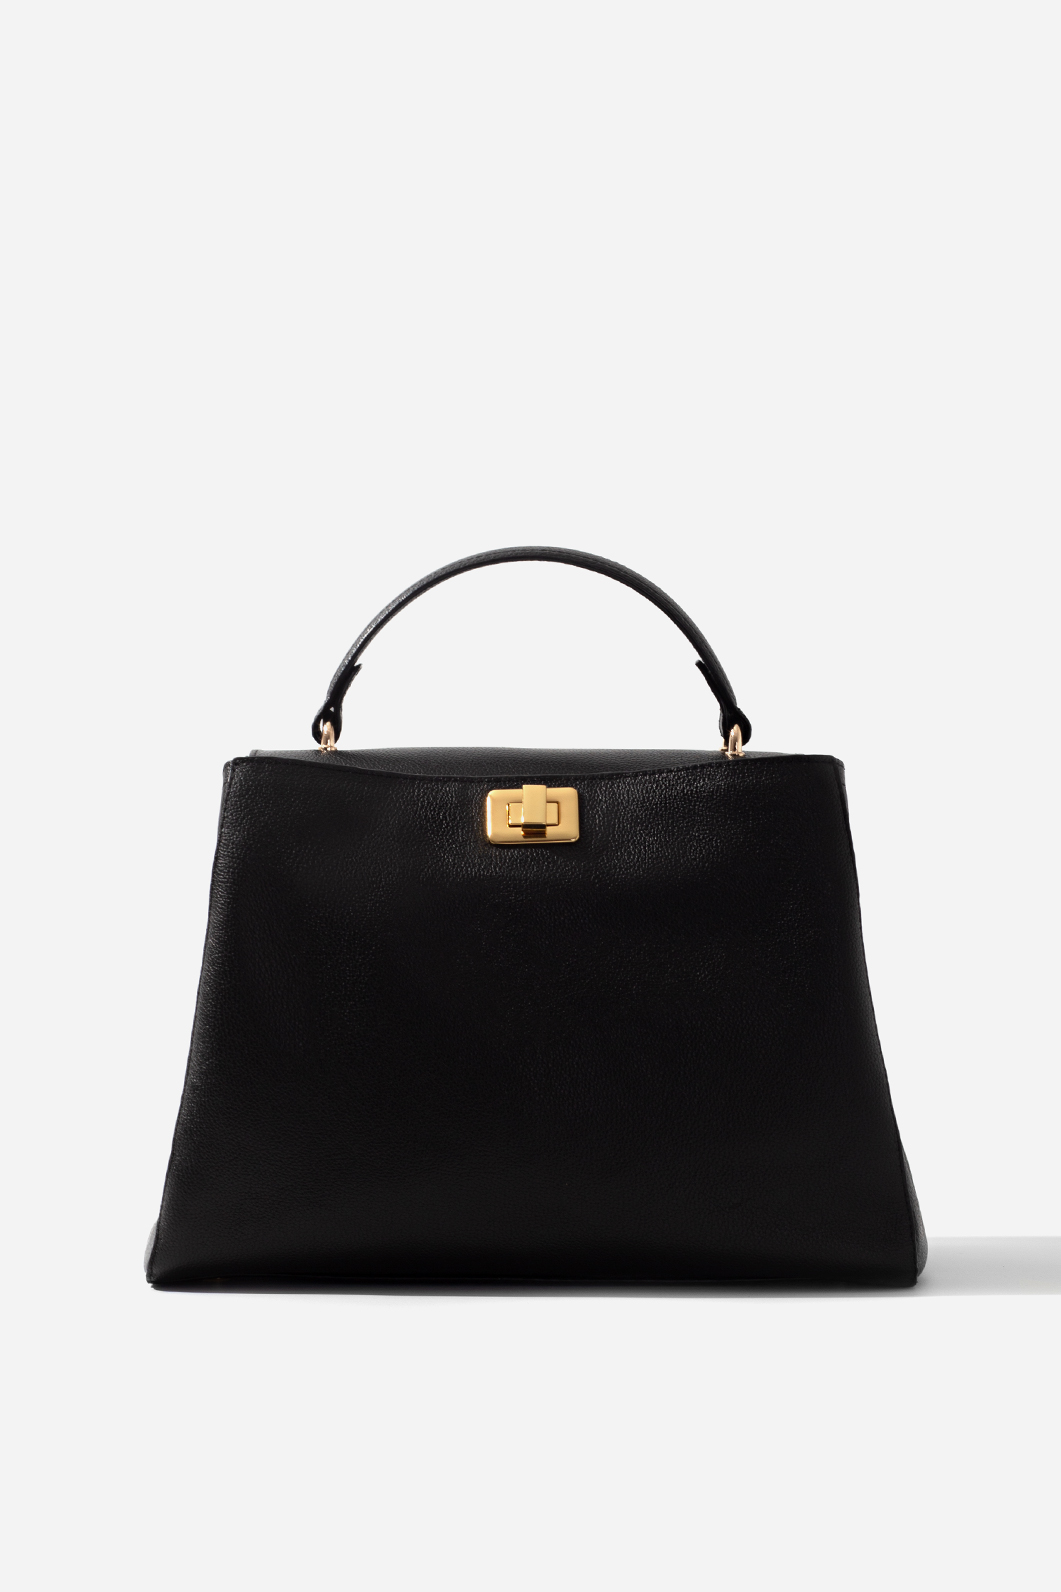 Erna Soft black leather
bag /gold/